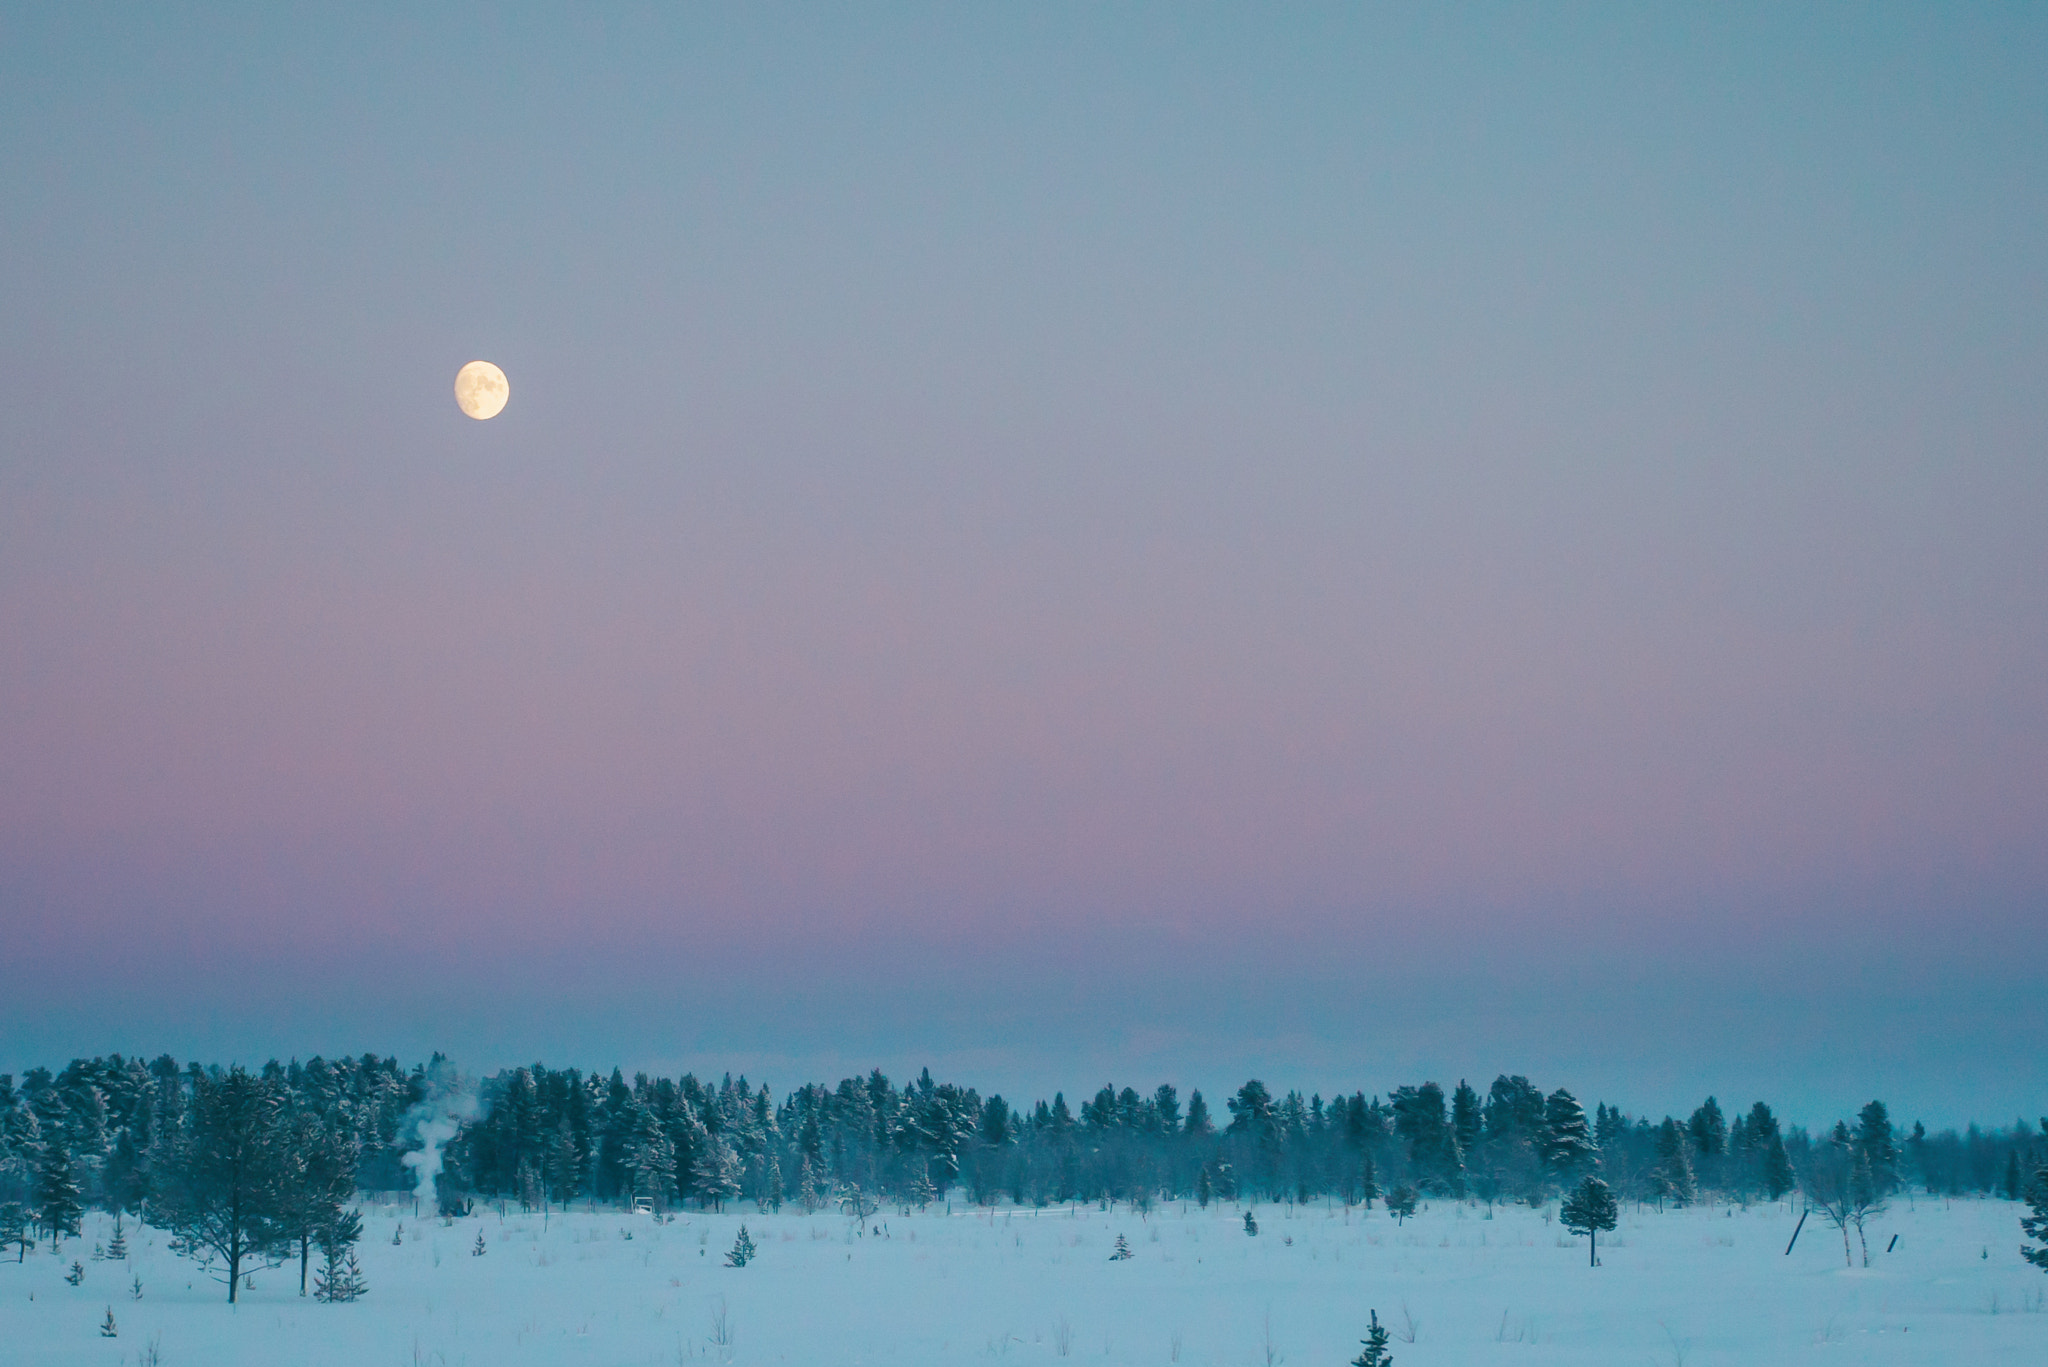 Sony a7S II sample photo. Arctic moon dusk photography